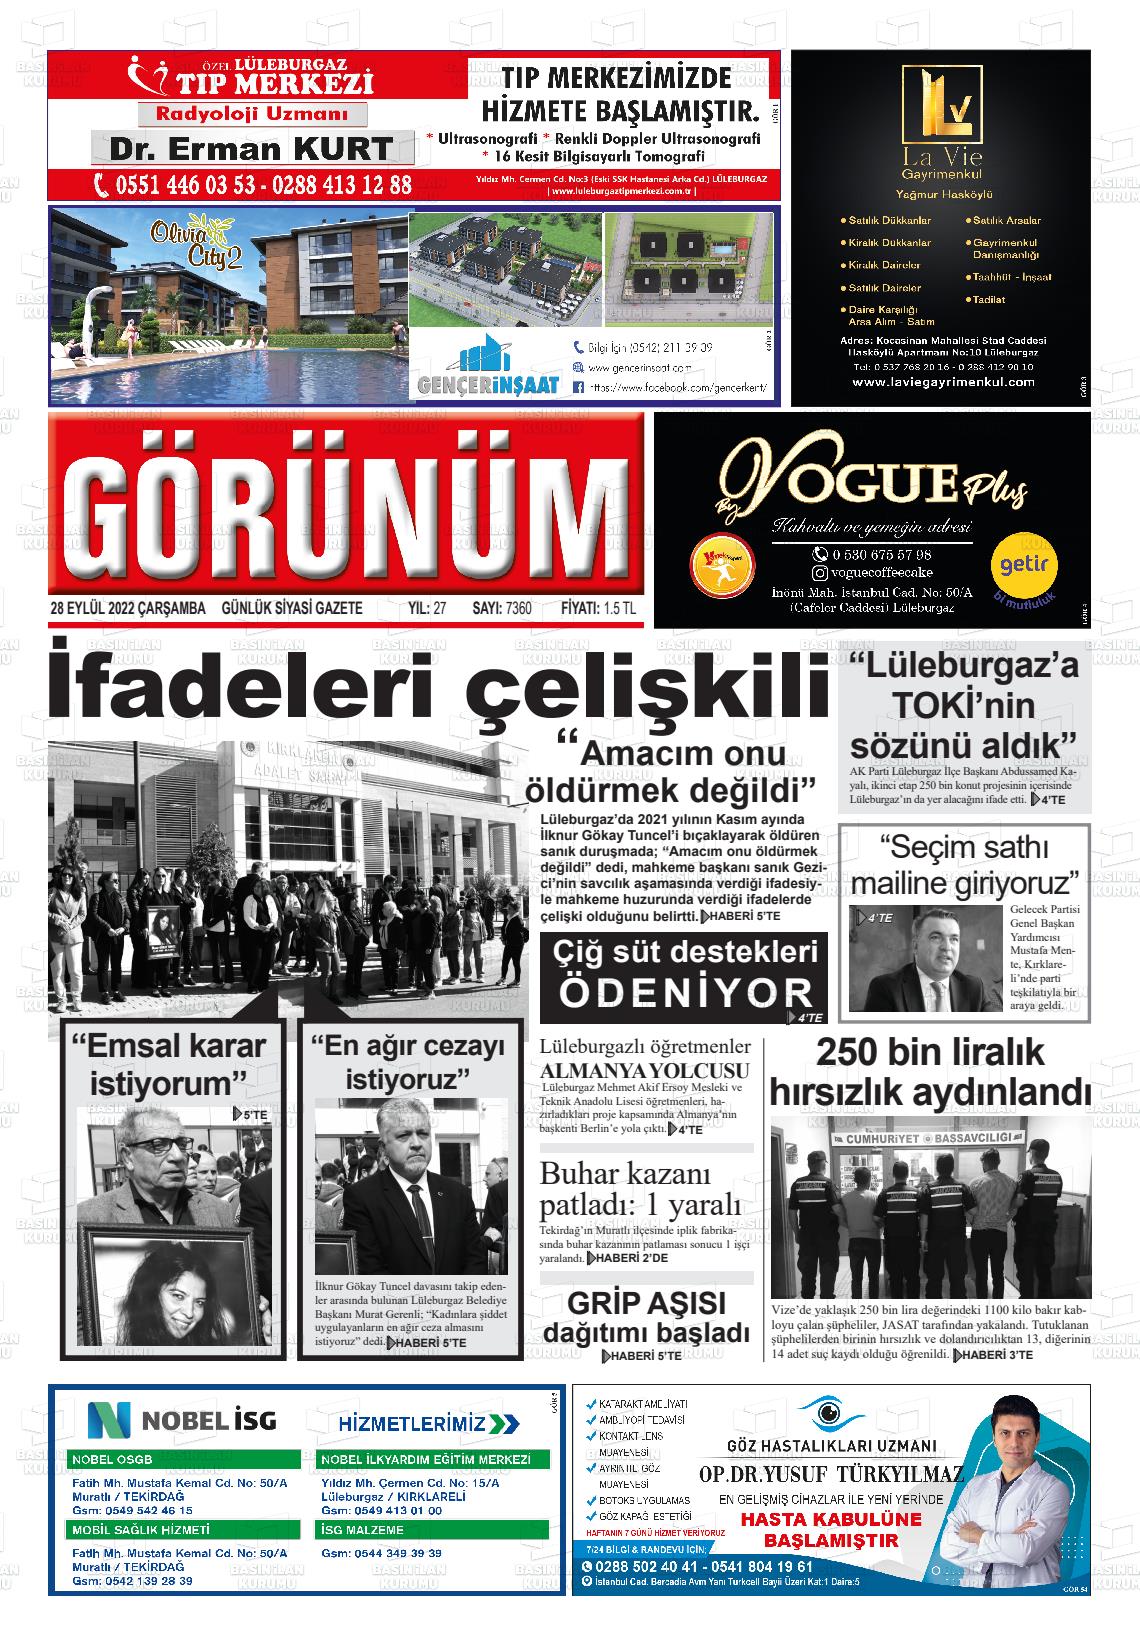 28 Eylül 2022 Lüleburgaz Görünüm Gazete Manşeti